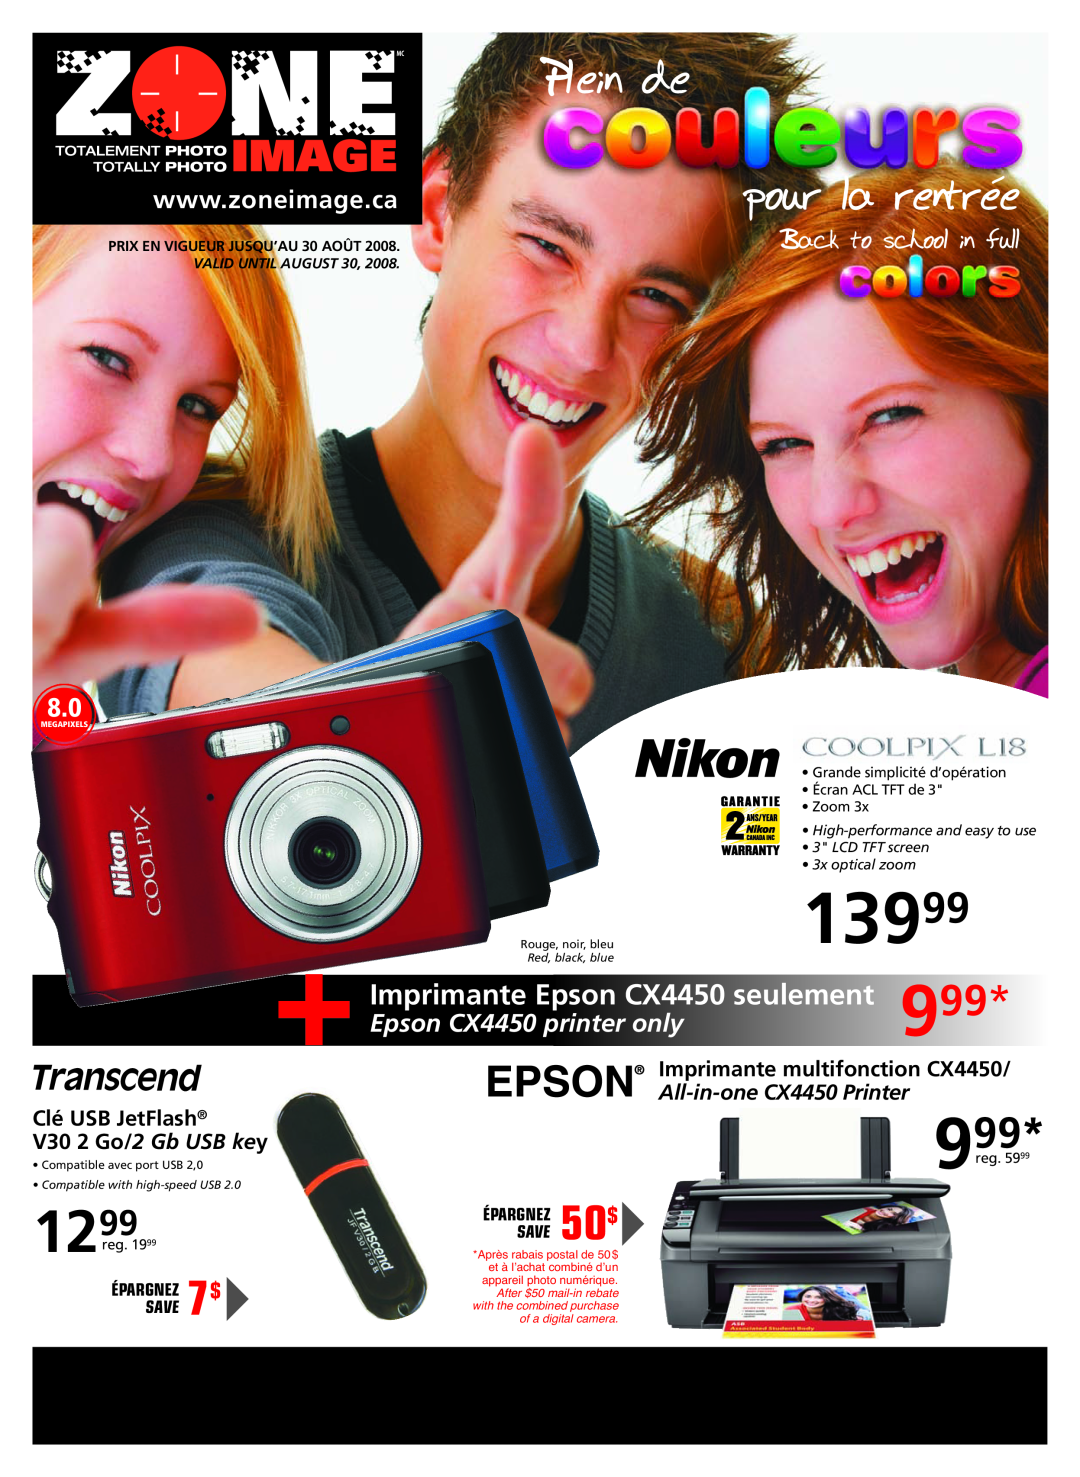 Nikon CX4450 manual 13999, •Grande simplicité d’opération •Écran ACL TFT de, Zoom, High-performanceand easy to use, Save 